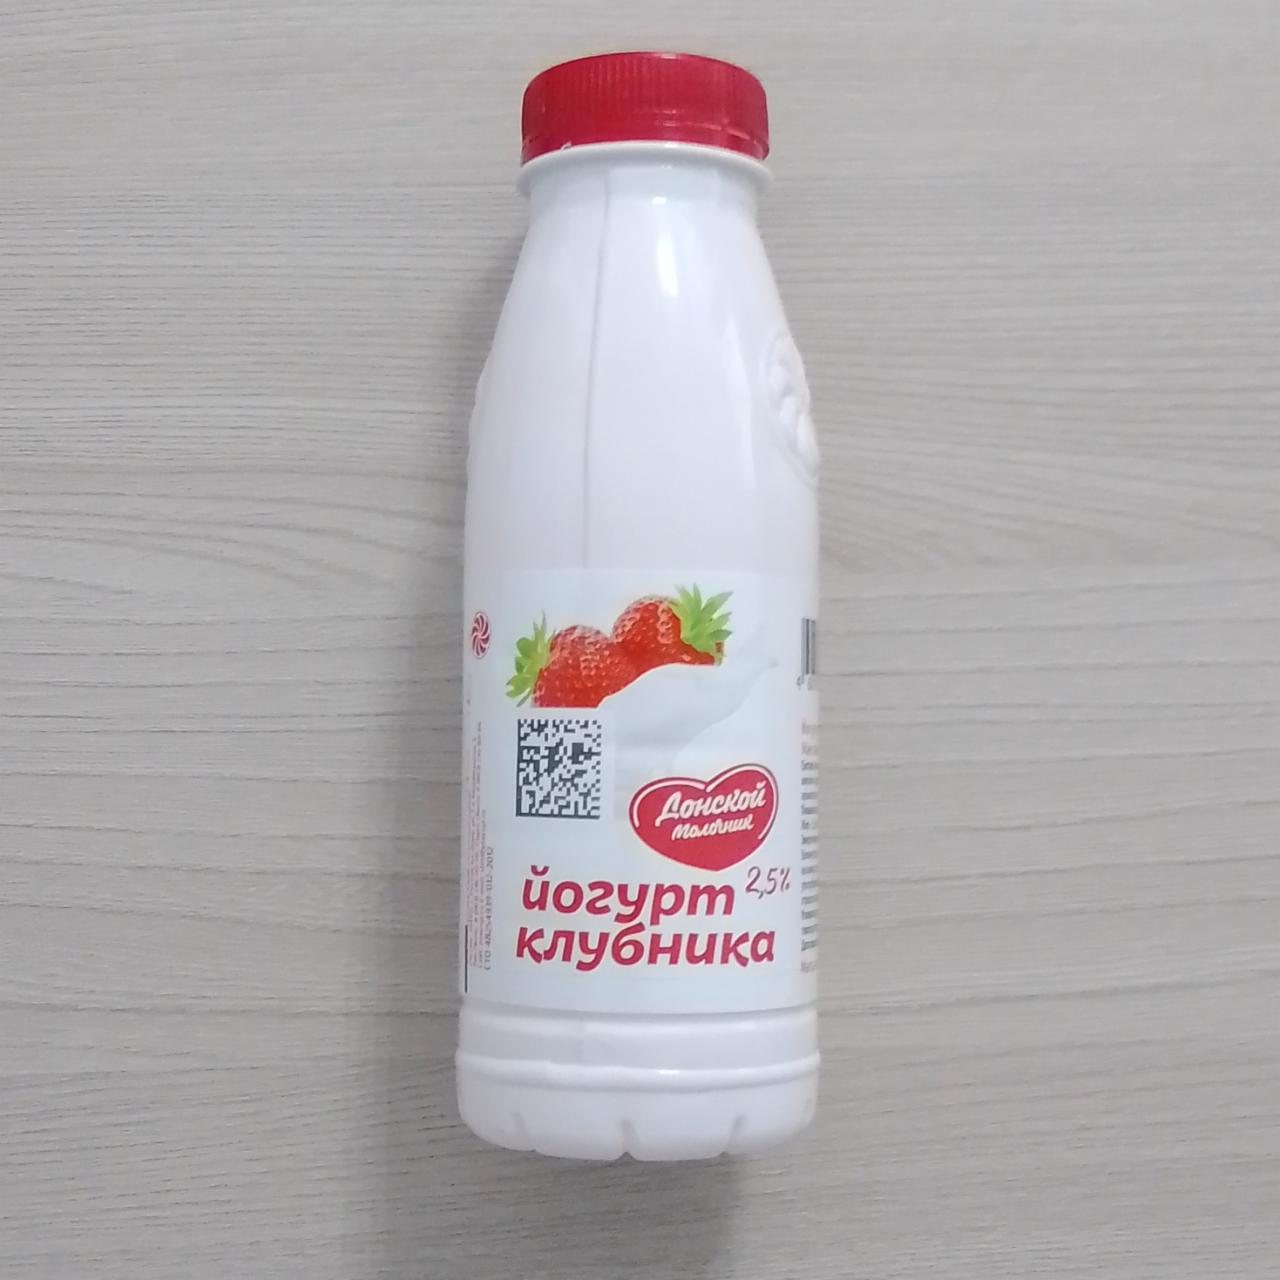 Фото - Йогурт 2.5% клубника Донской молочник